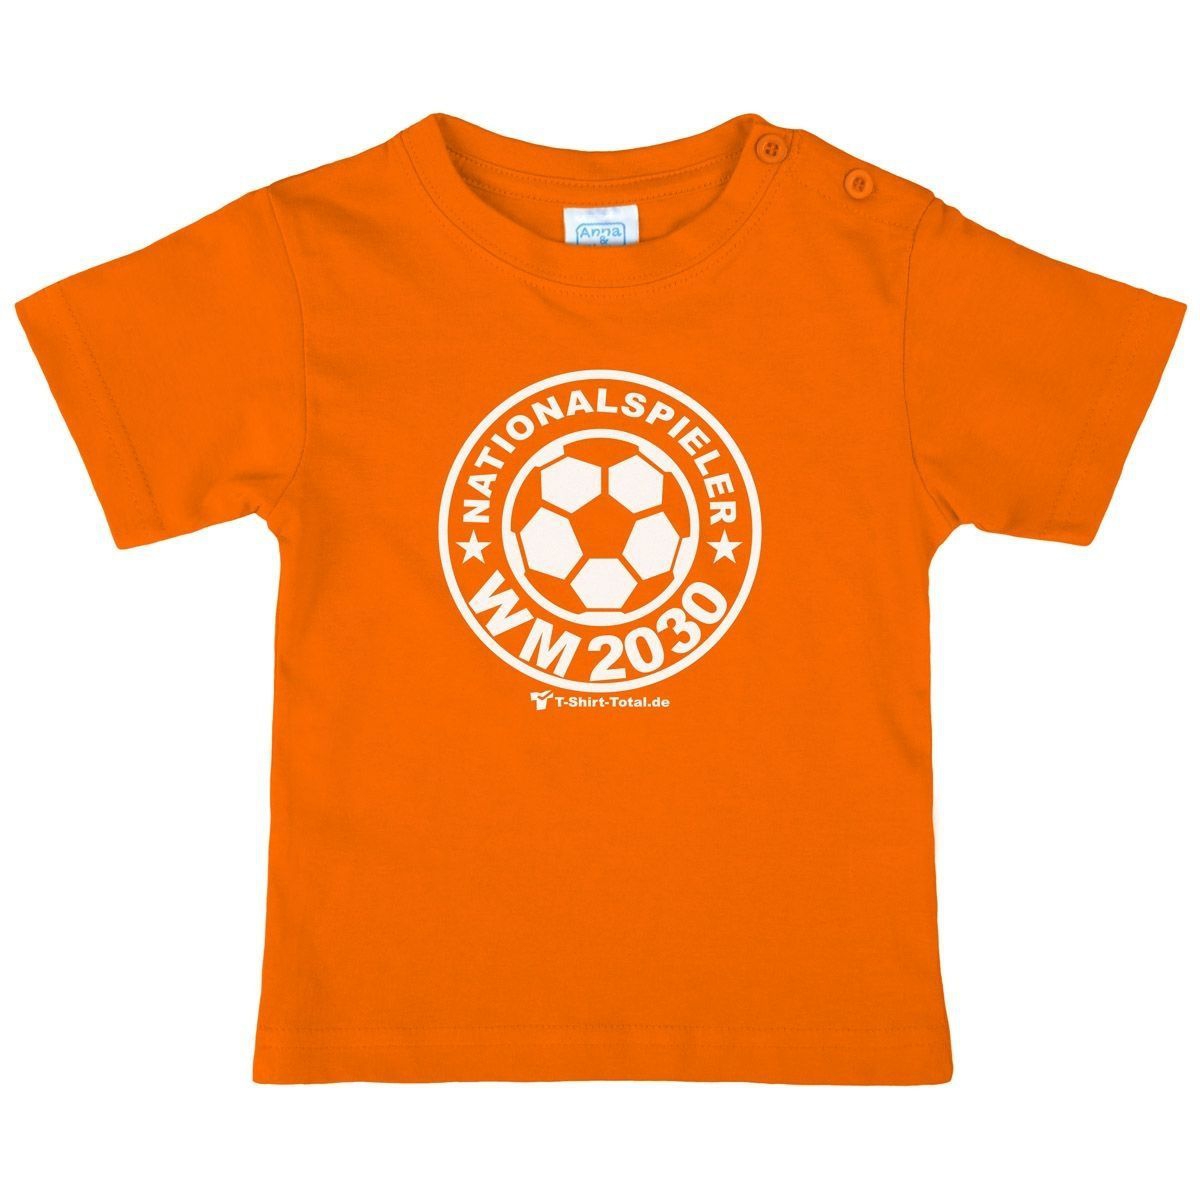 Nationalspieler 2042 Kinder T-Shirt orange 104